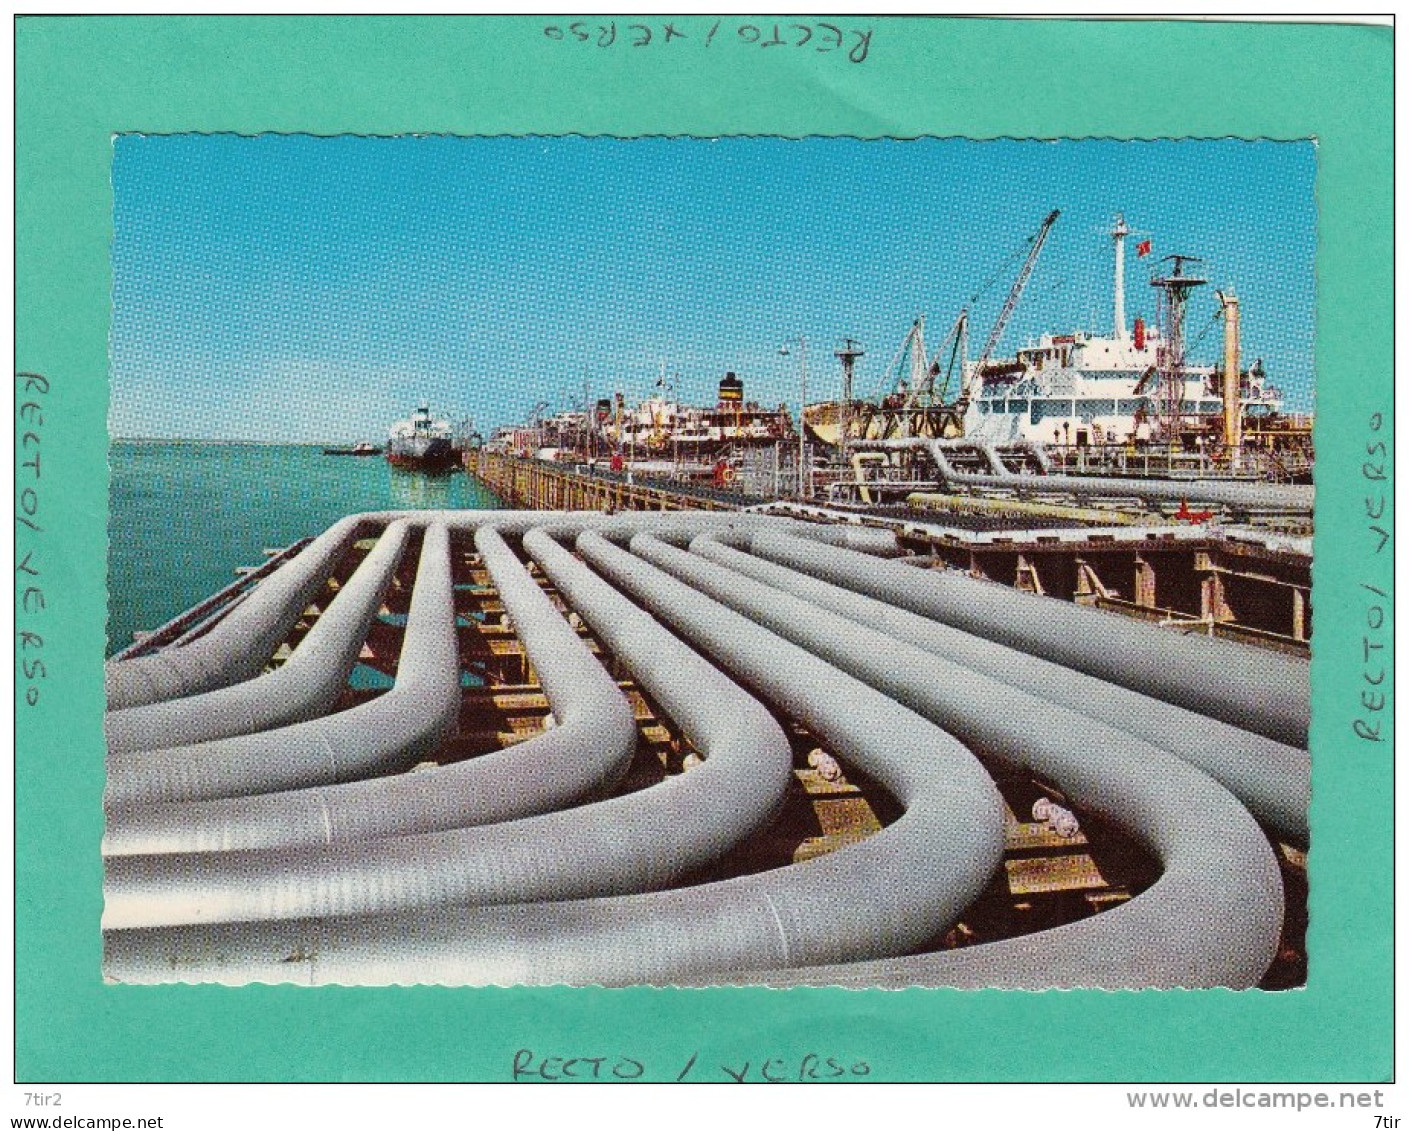 KUWAIT OIL PIPE LINES - Kuwait